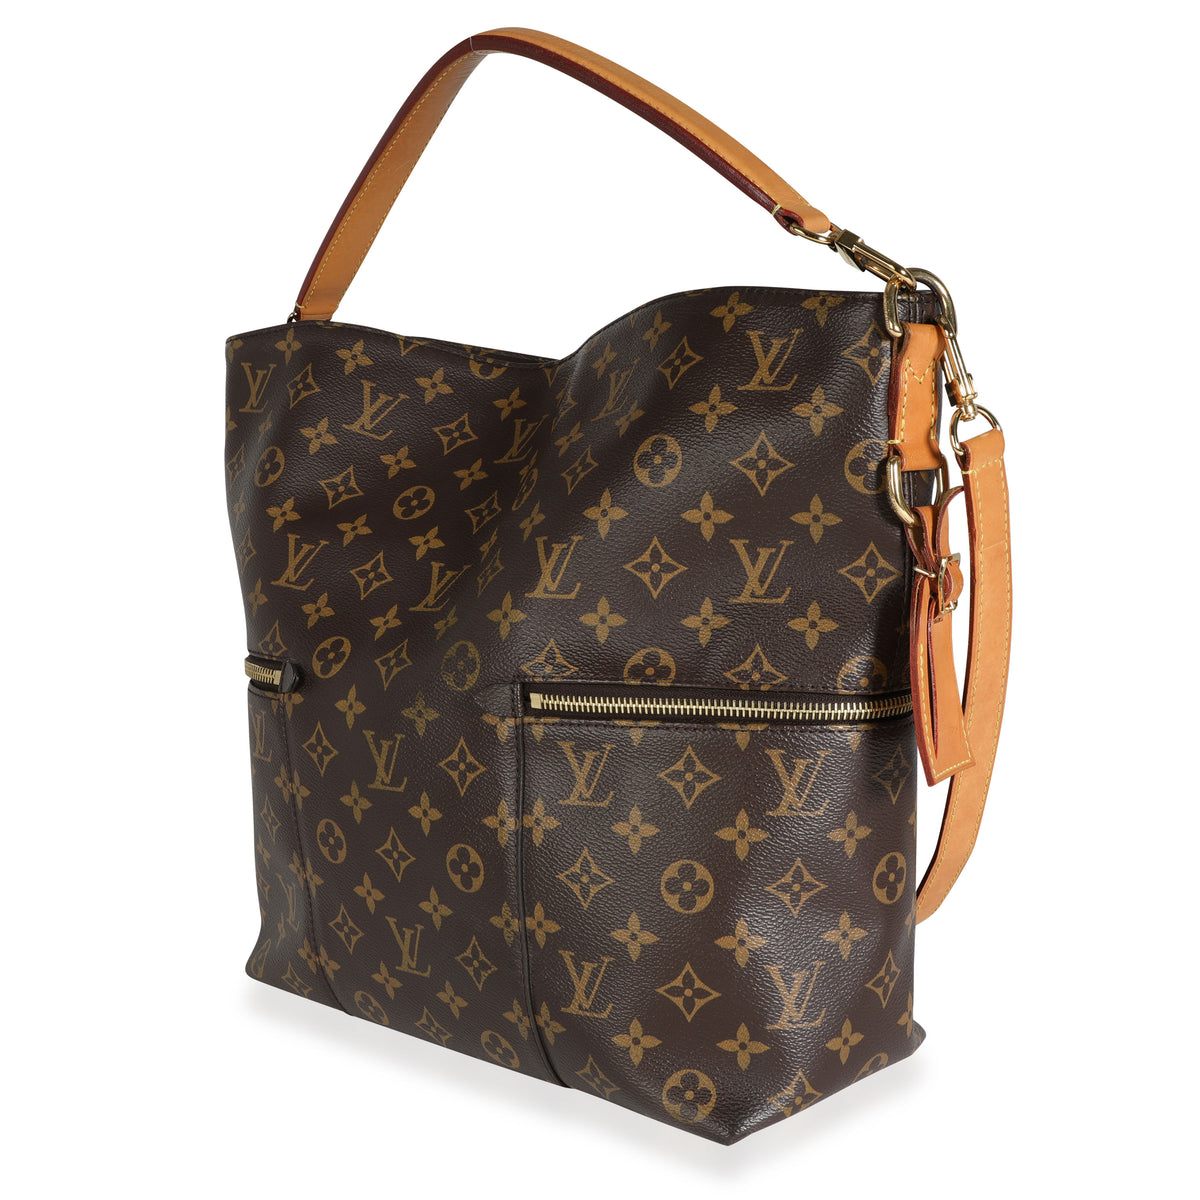 Louis Vuitton Melie Bag